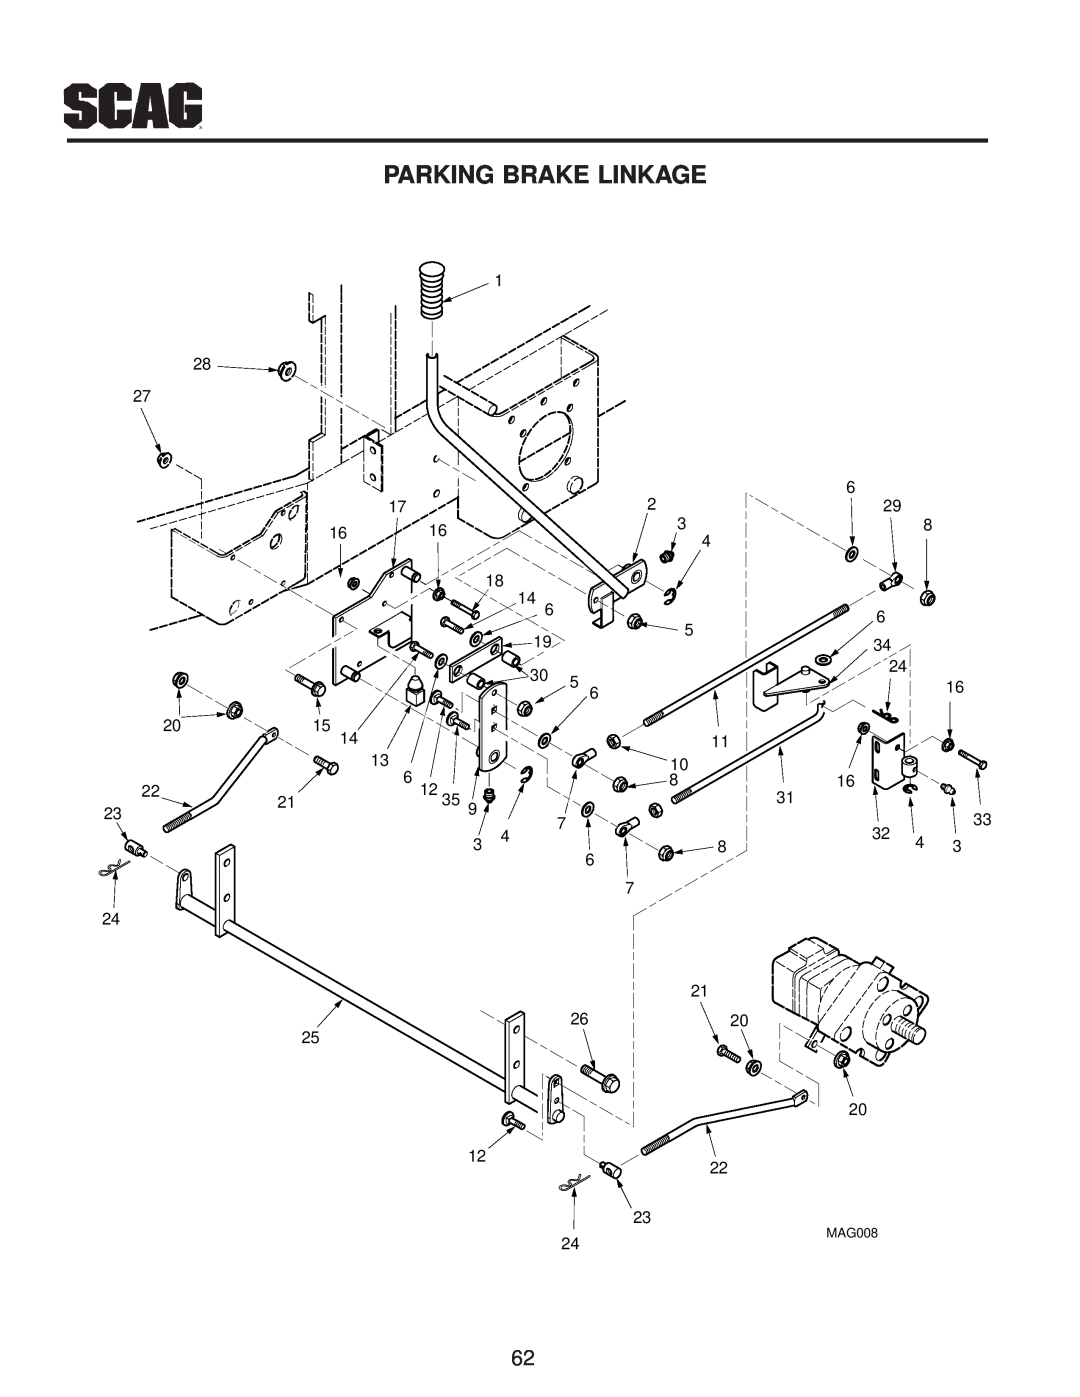 Scag Power Equipment manual Parking Brake Linkage, MAG008 